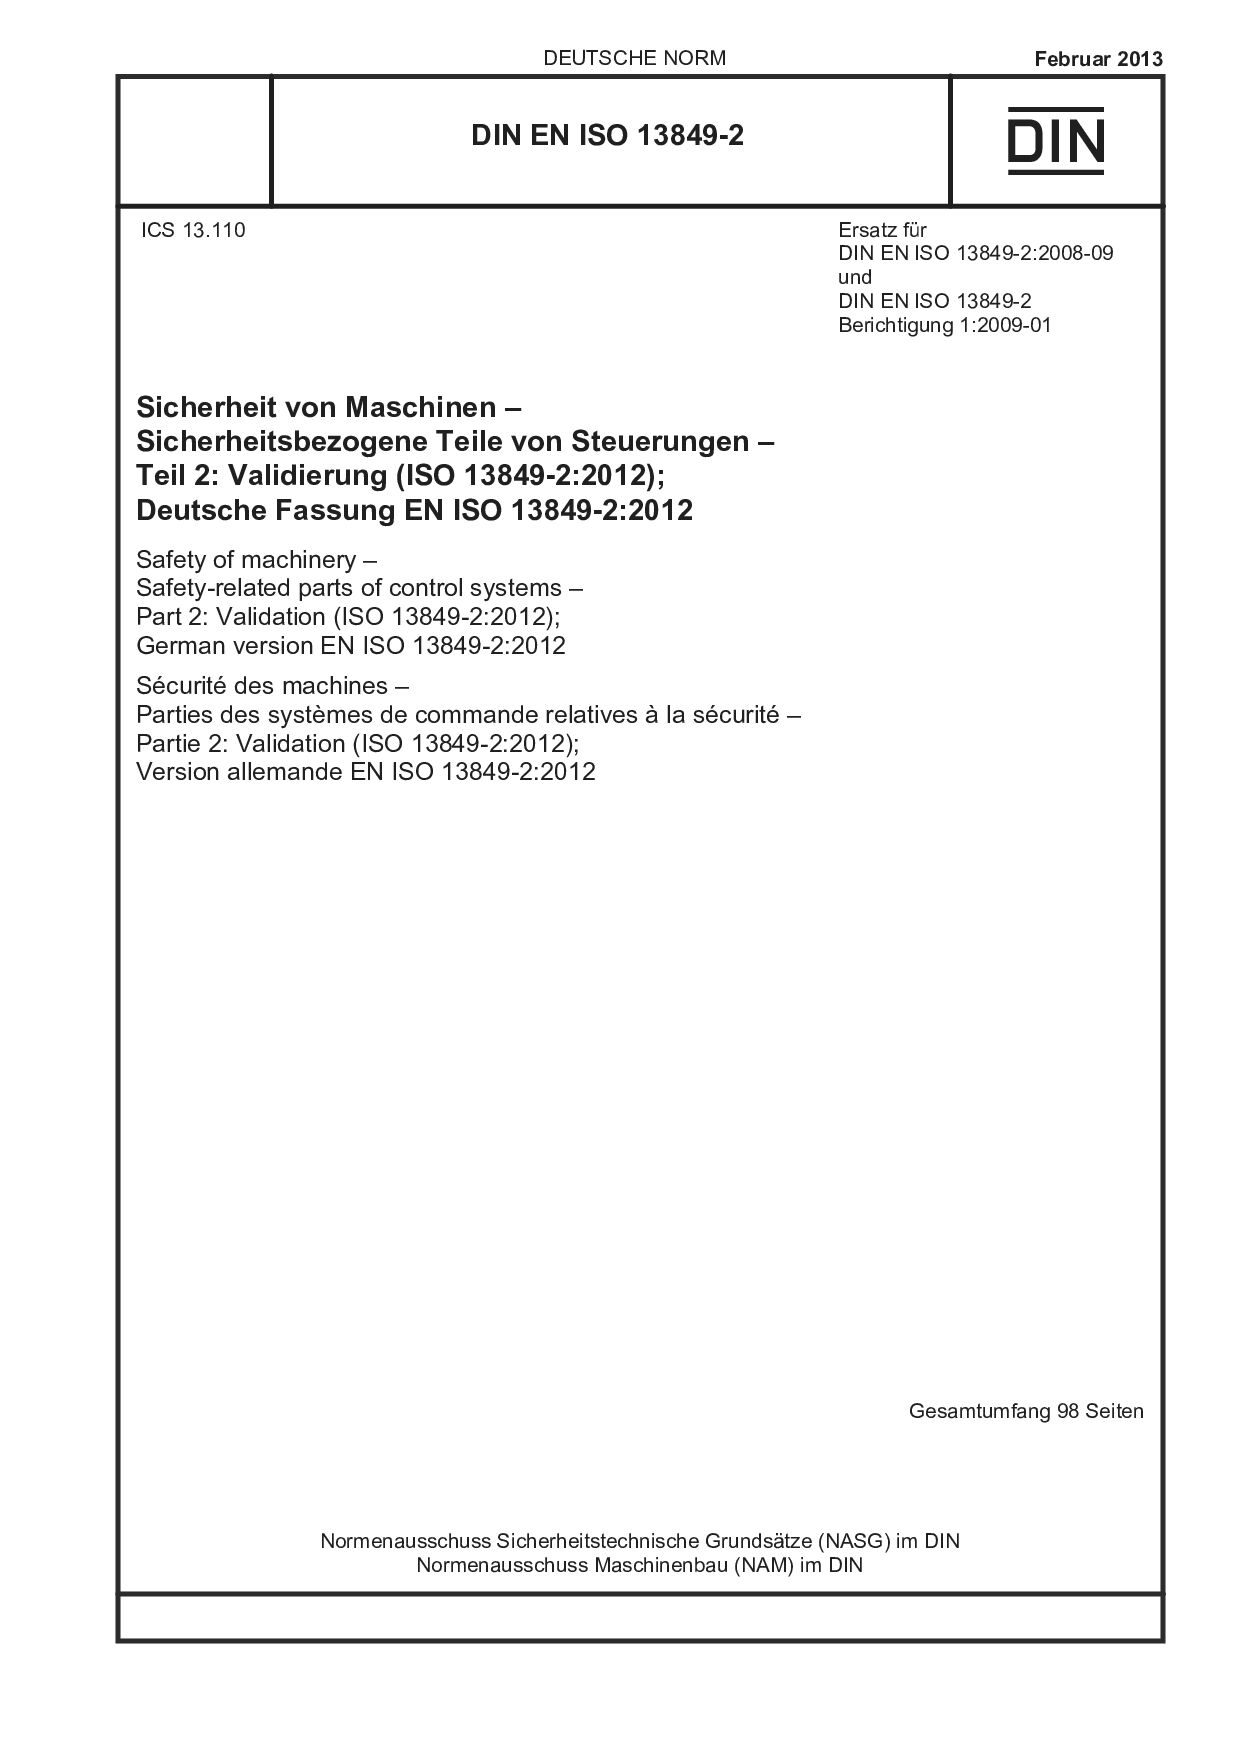 DIN EN ISO 13849-2:2013封面图